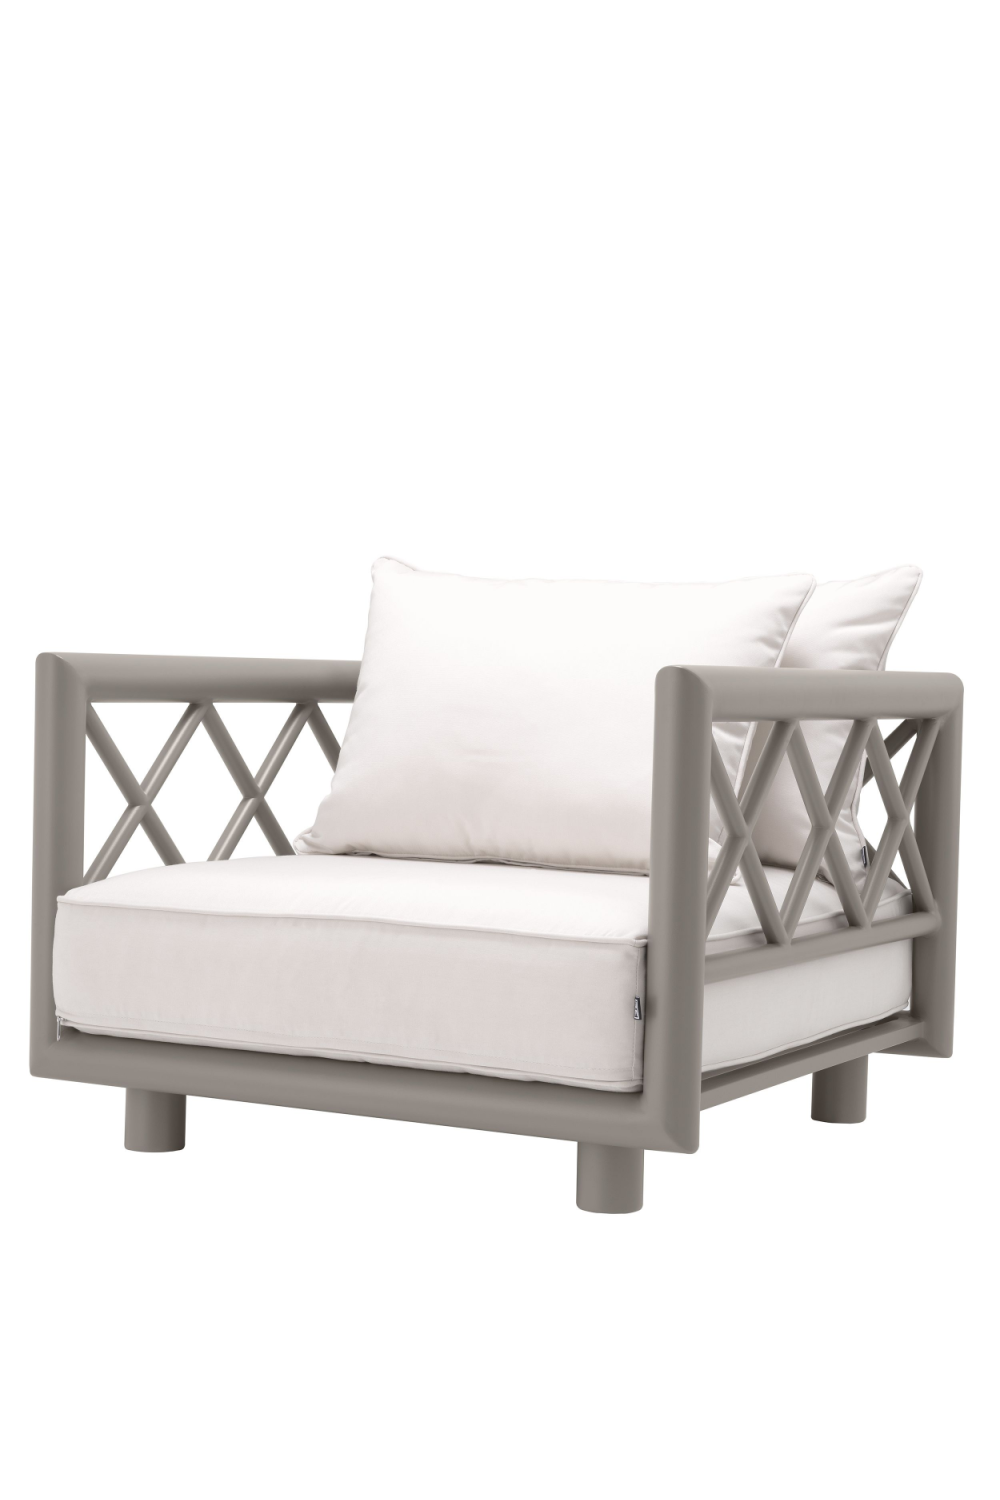 Gray Sunbrella Outdoor Lounge Chair | Eichholtz Mandelieu | OROA TRADE